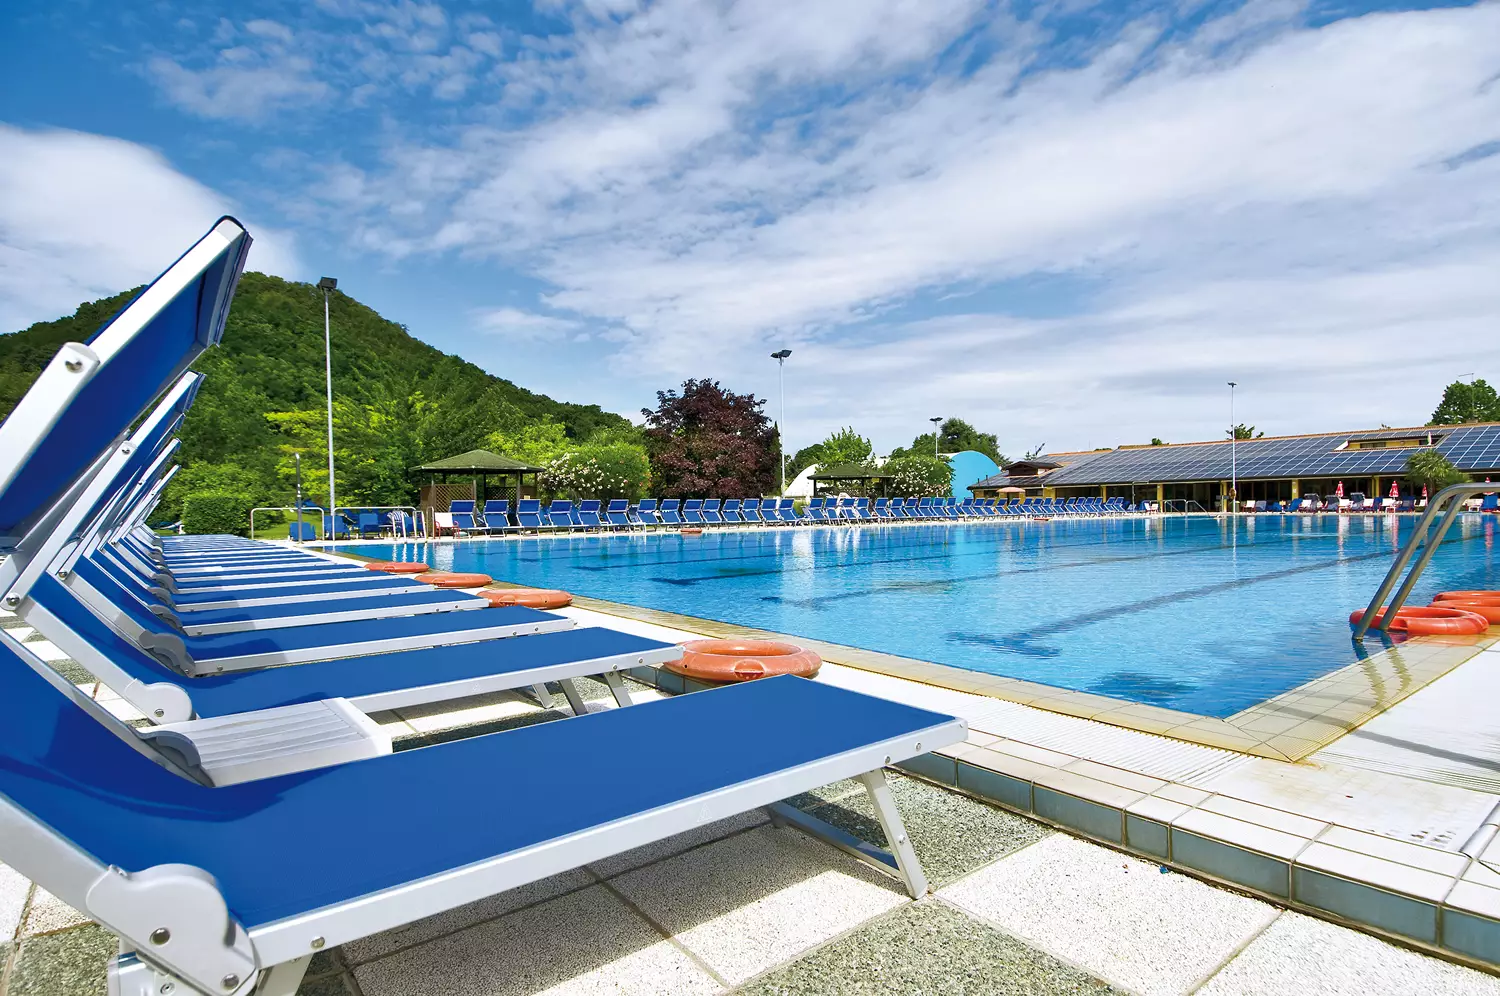 Hotel Petrarca - Ingressi piscina